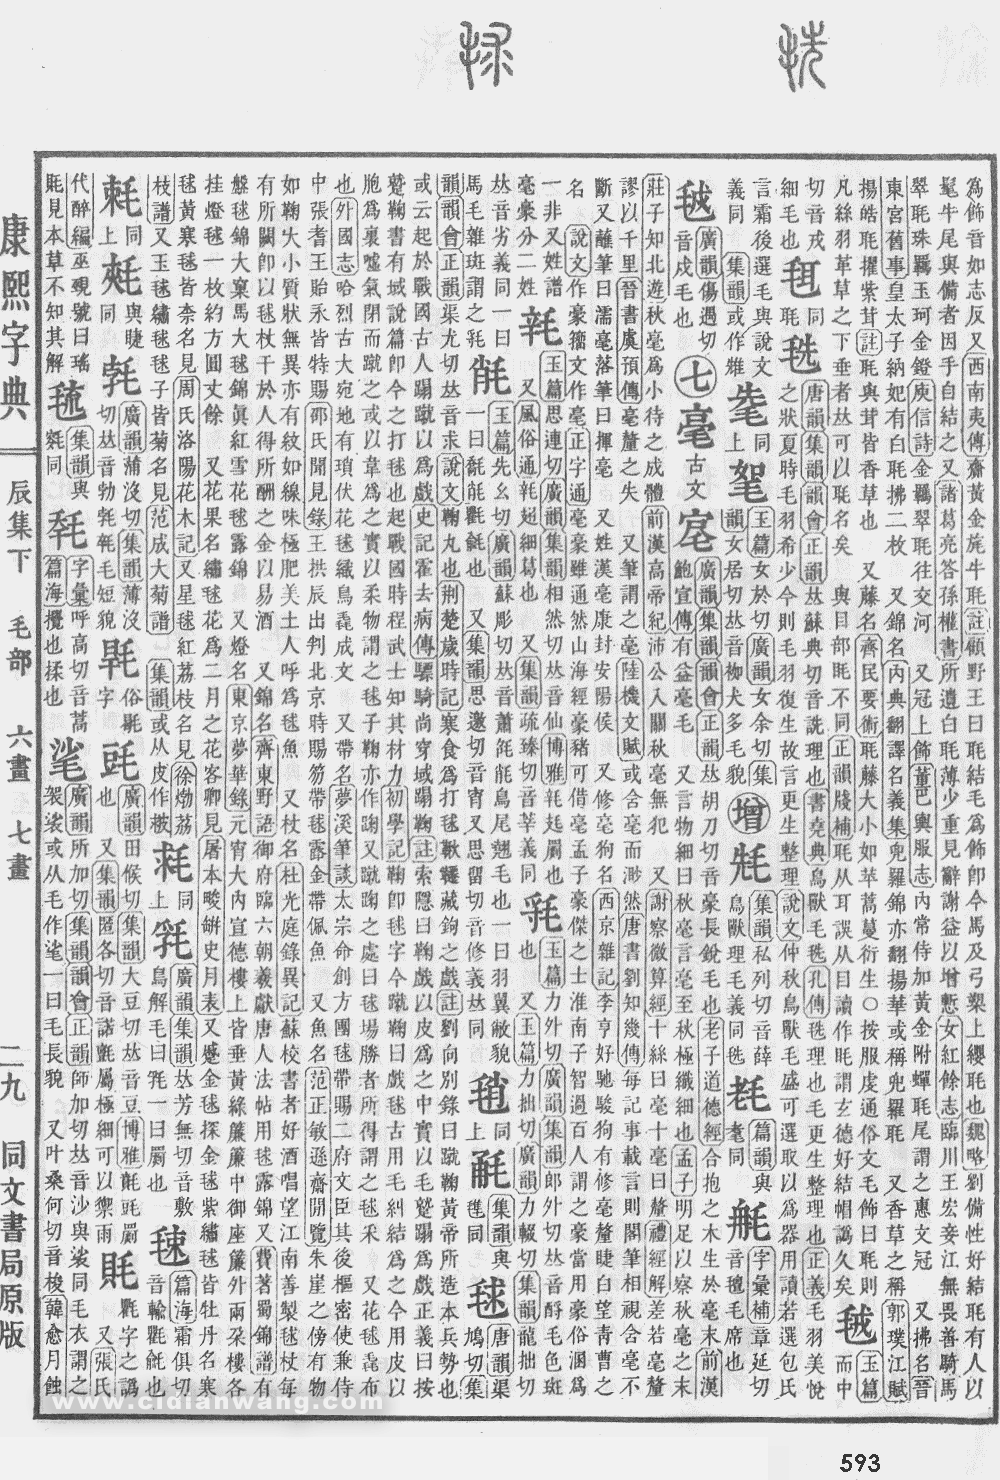 康熙字典掃描版第593頁